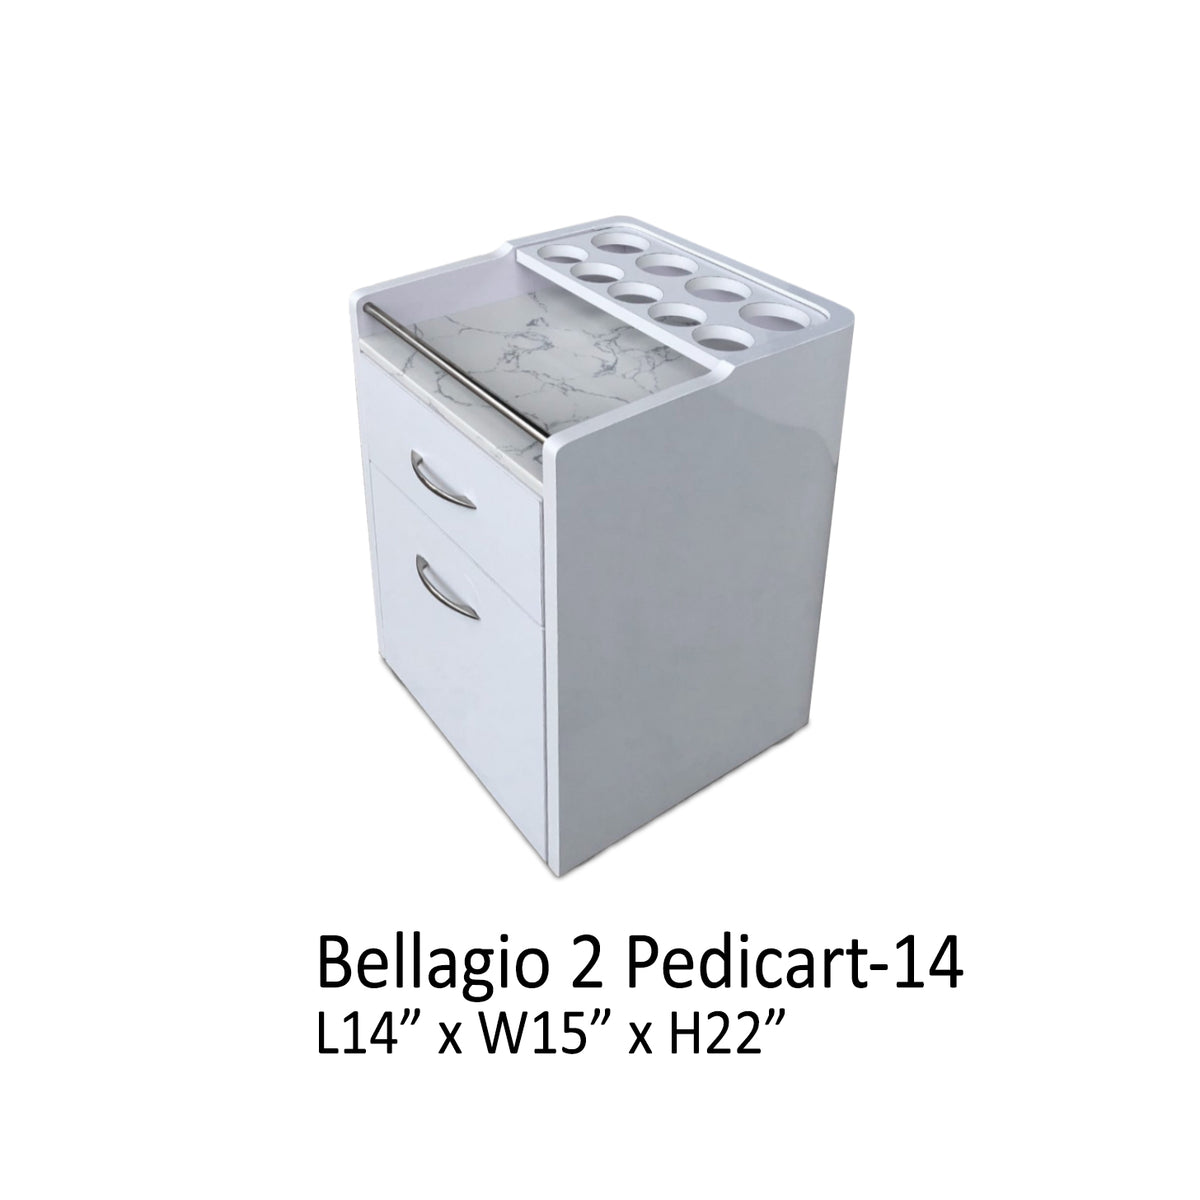 Bellagio 2 Pedicart White 14